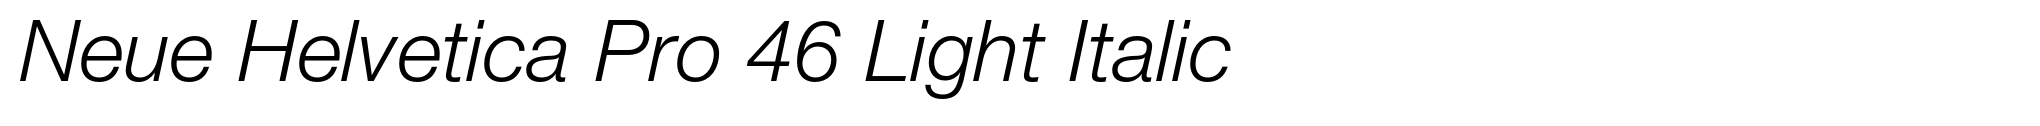 Neue Helvetica Pro 46 Light Italic image